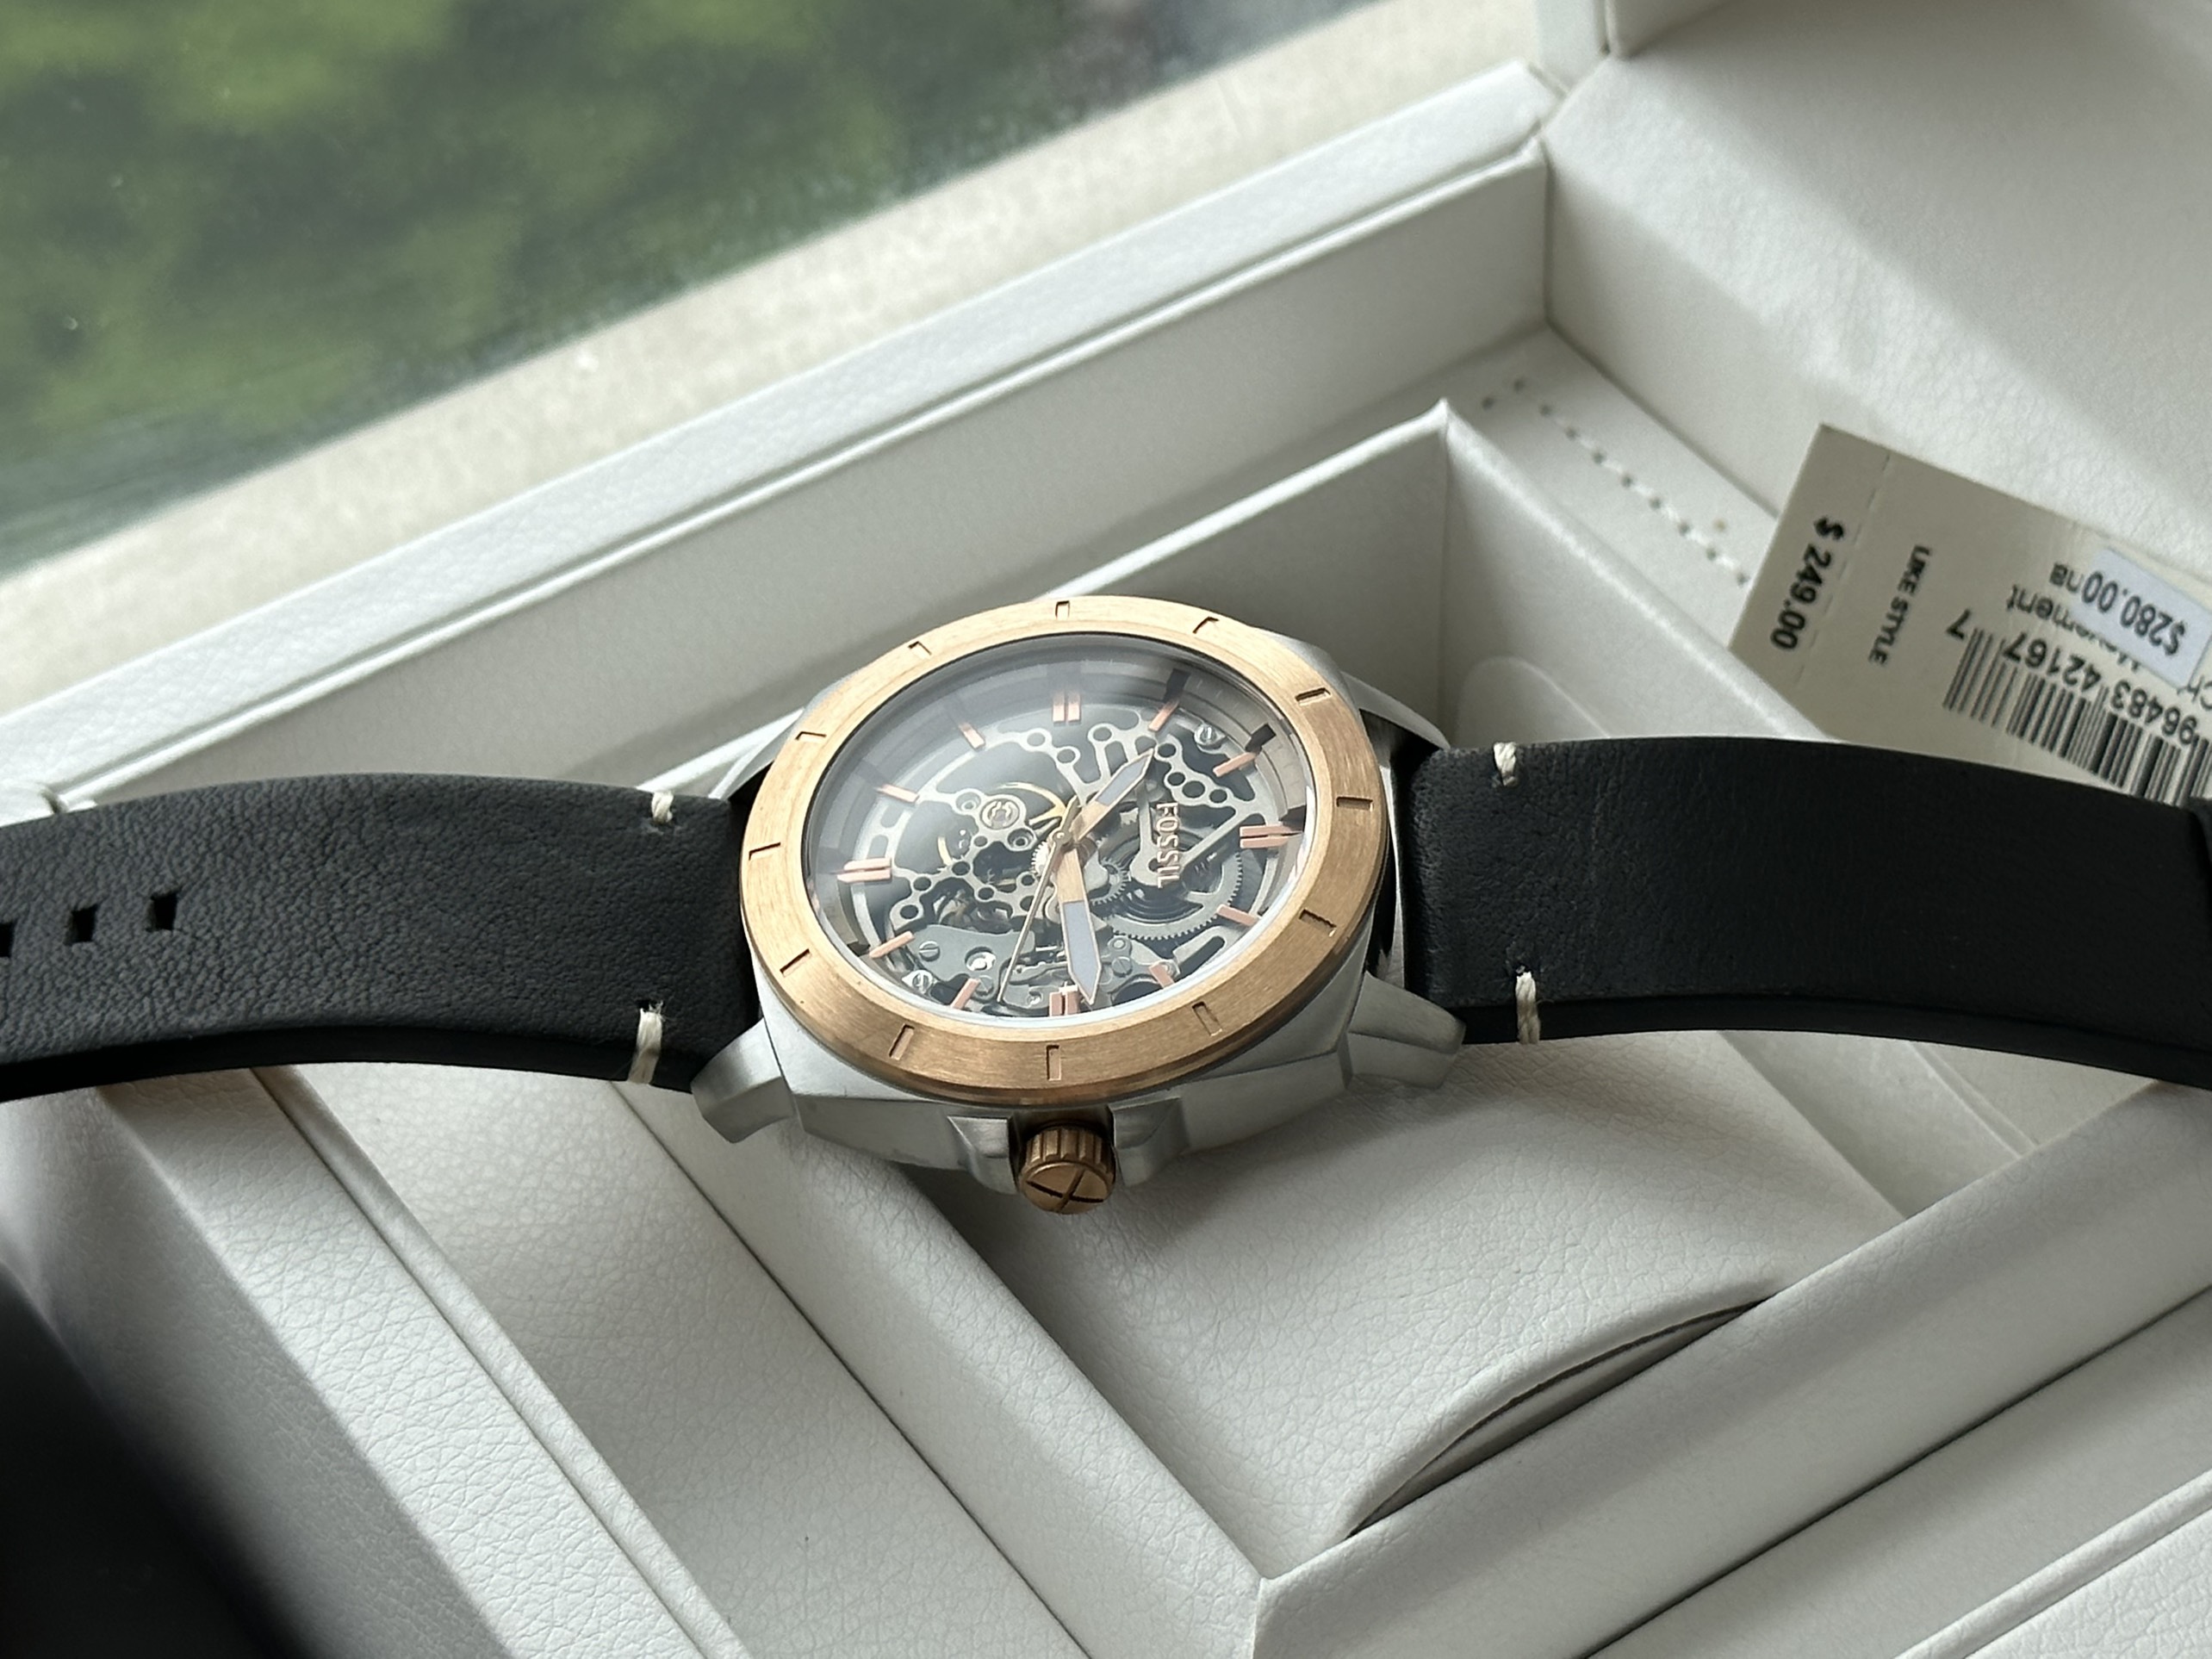 Đồng hồ FOSSIL Privateer Sport Mechanical Black Leather Watch BQ2428 - Đánh thức phong cách thể thao với đồng hồ FOSSIL chất lượng